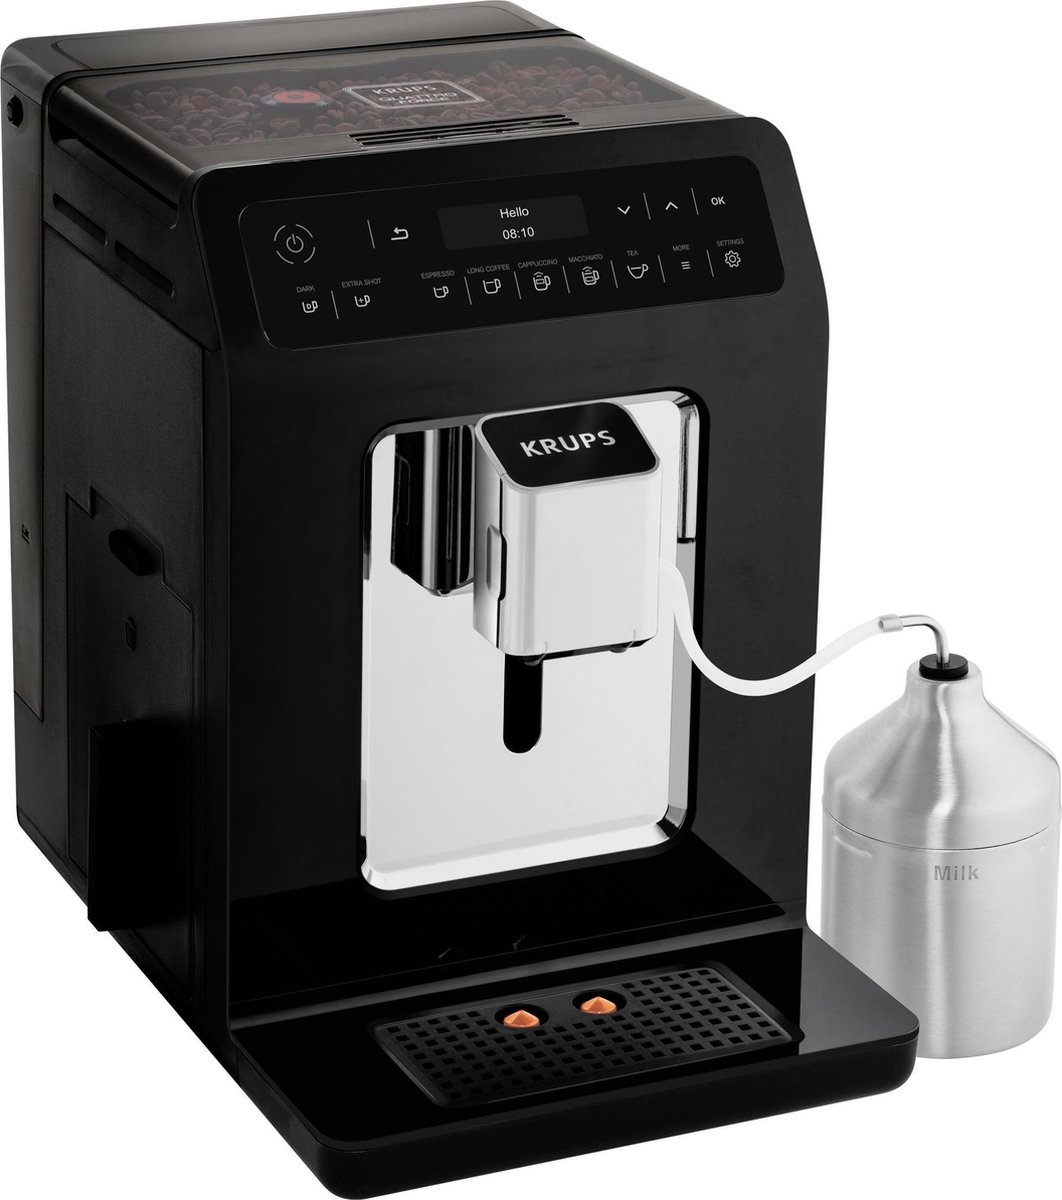 Evidence EA8918 - Volautomatische espressomachine - Zwart bol.com